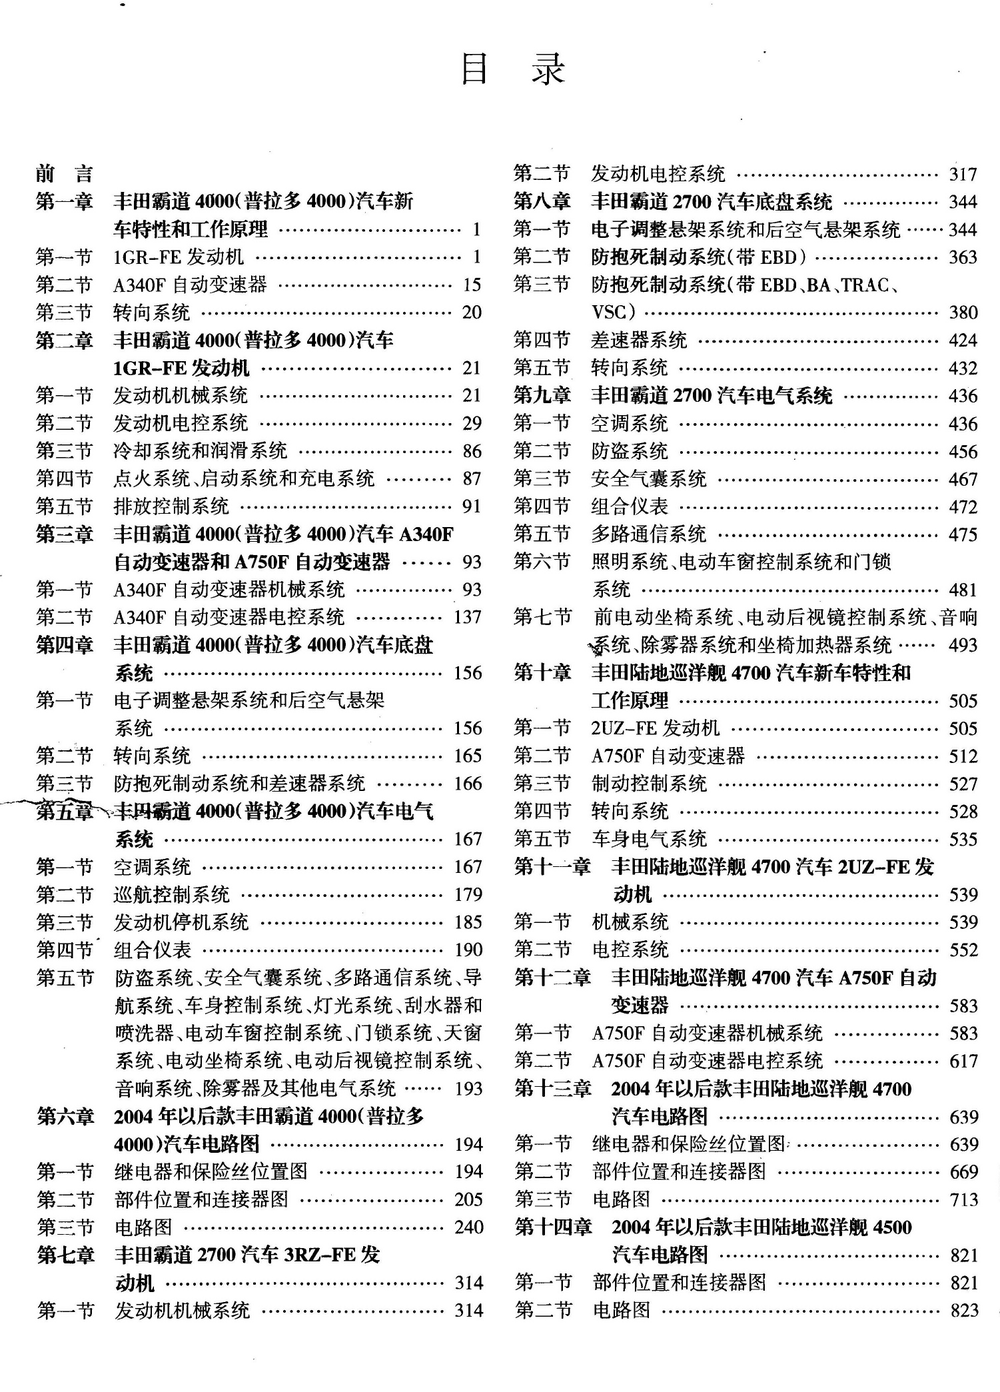 丰田霸道4000和陆地巡洋舰4700汽车维修手册 完全版 (2).pdf